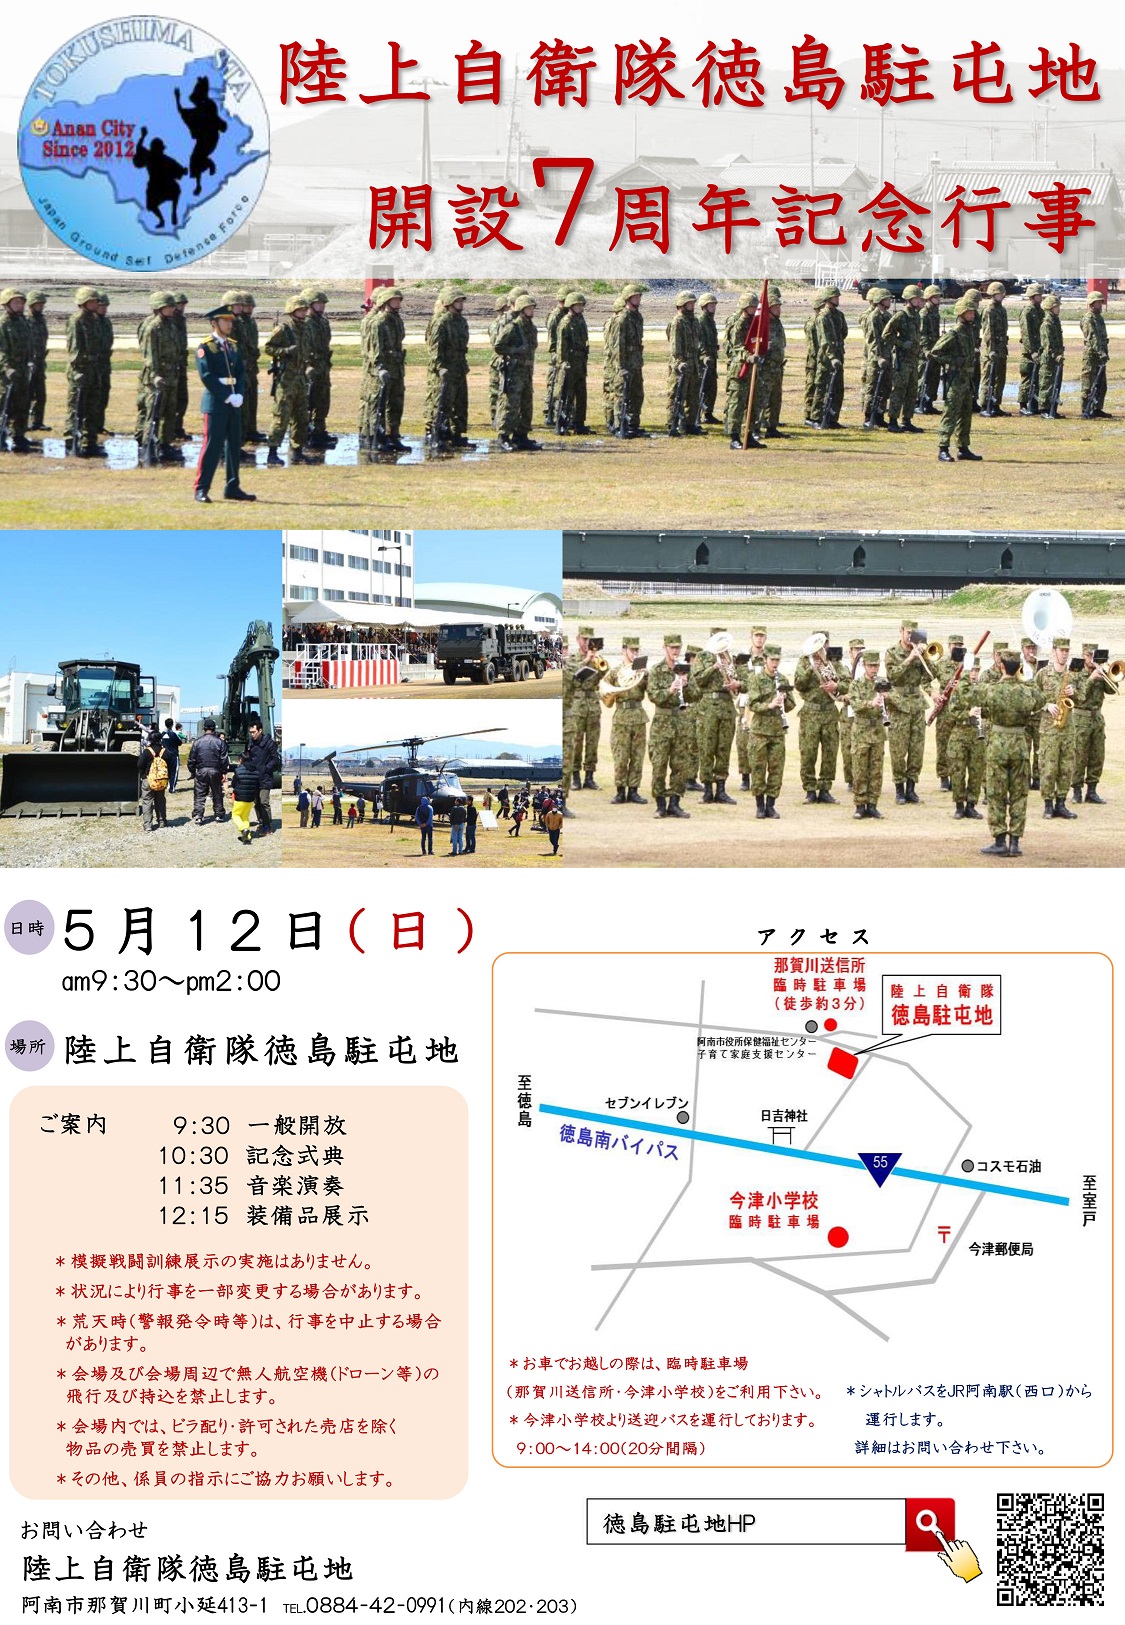 陸上自衛隊 徳島駐屯地 開設7周年記念行事ポスター